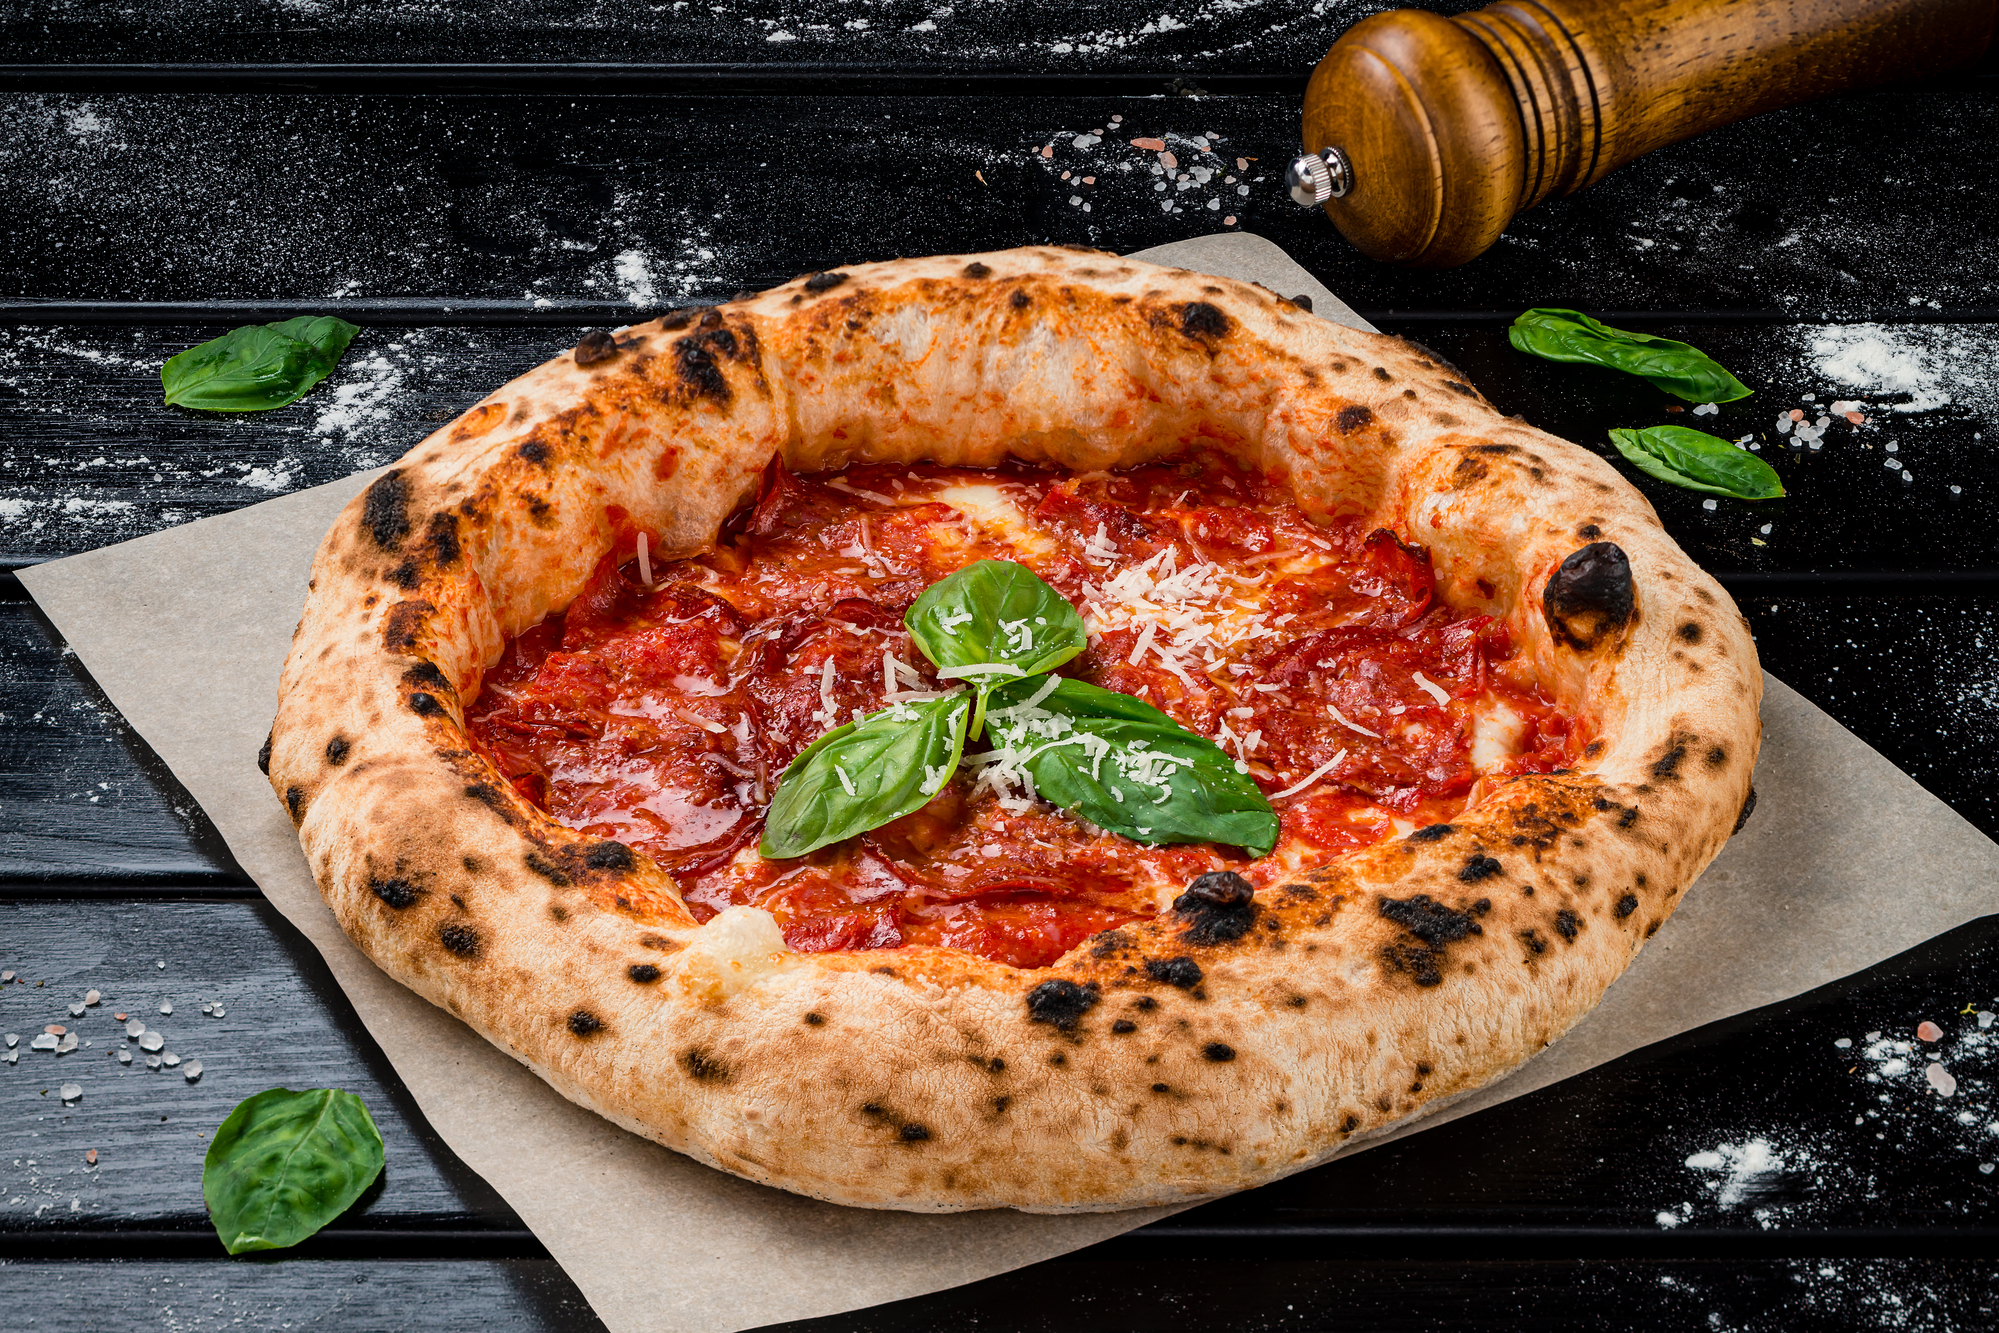 pizza napoletana fatta in casa alla carbonara dal forno con pancetta, prosciutto, formaggio, salame, parmigiano e basilico